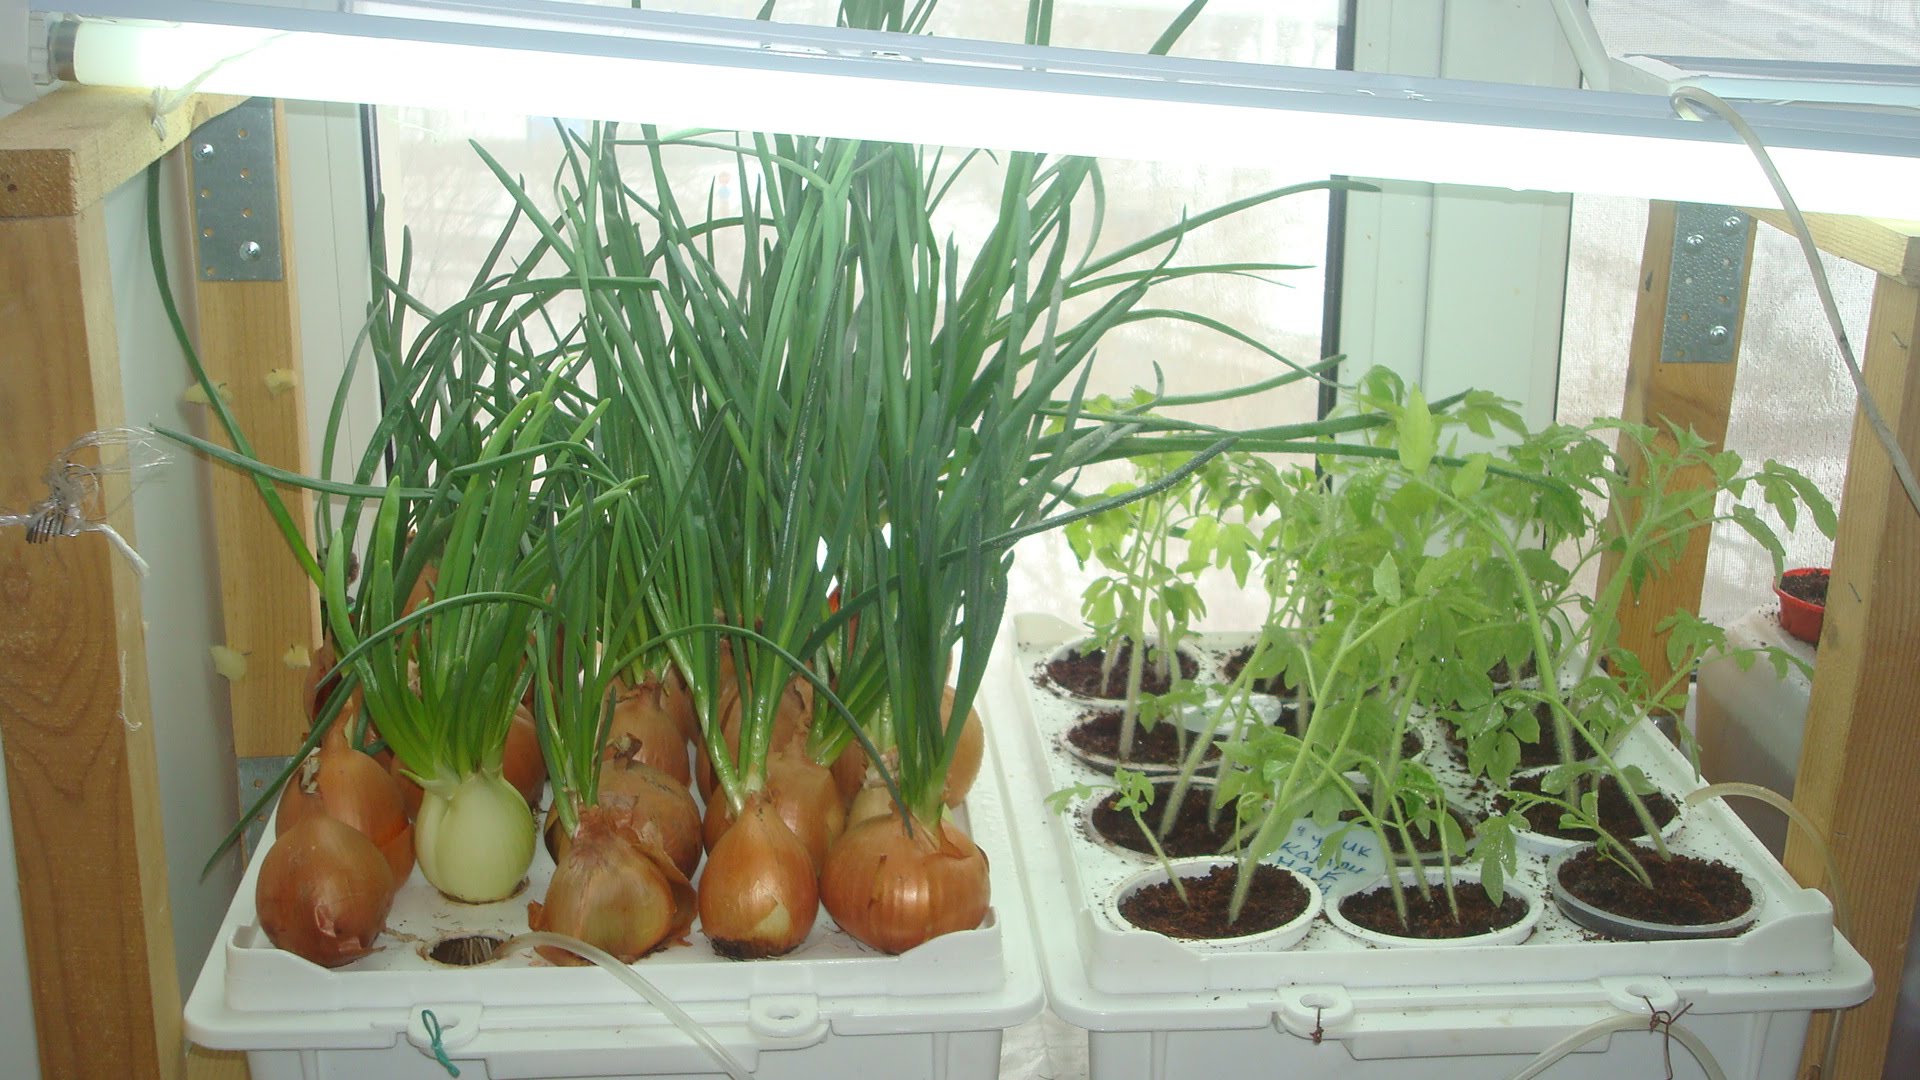 Домашнее выращивание овощей